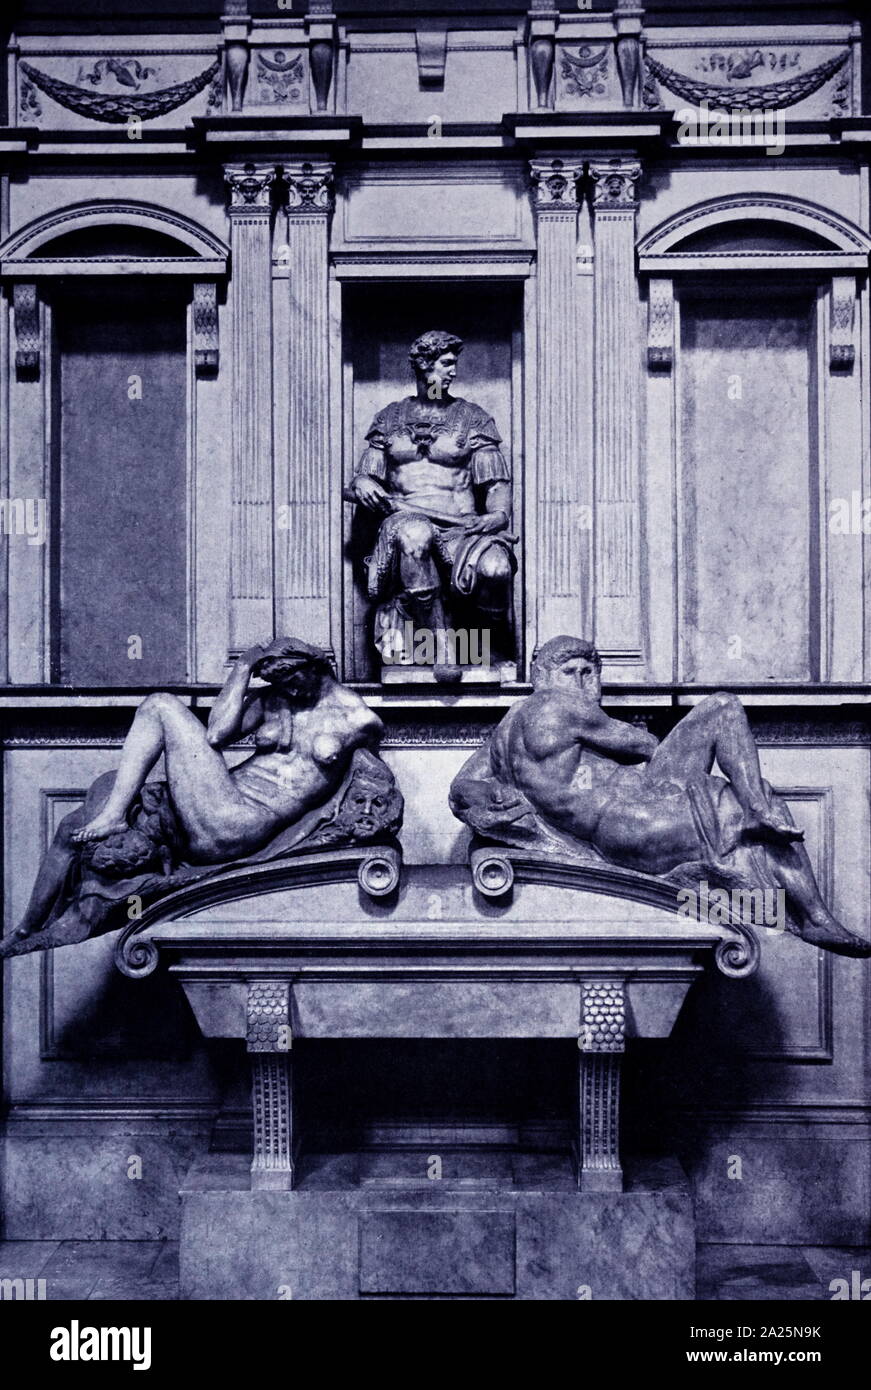 Grab von Giuliano de Medici von Michelangelo. Michelangelo di Lodovico Buonarroti Simoni (1475-1564) ein italienischer Bildhauer, Maler, Architekt und Dichter der Renaissance. Stockfoto